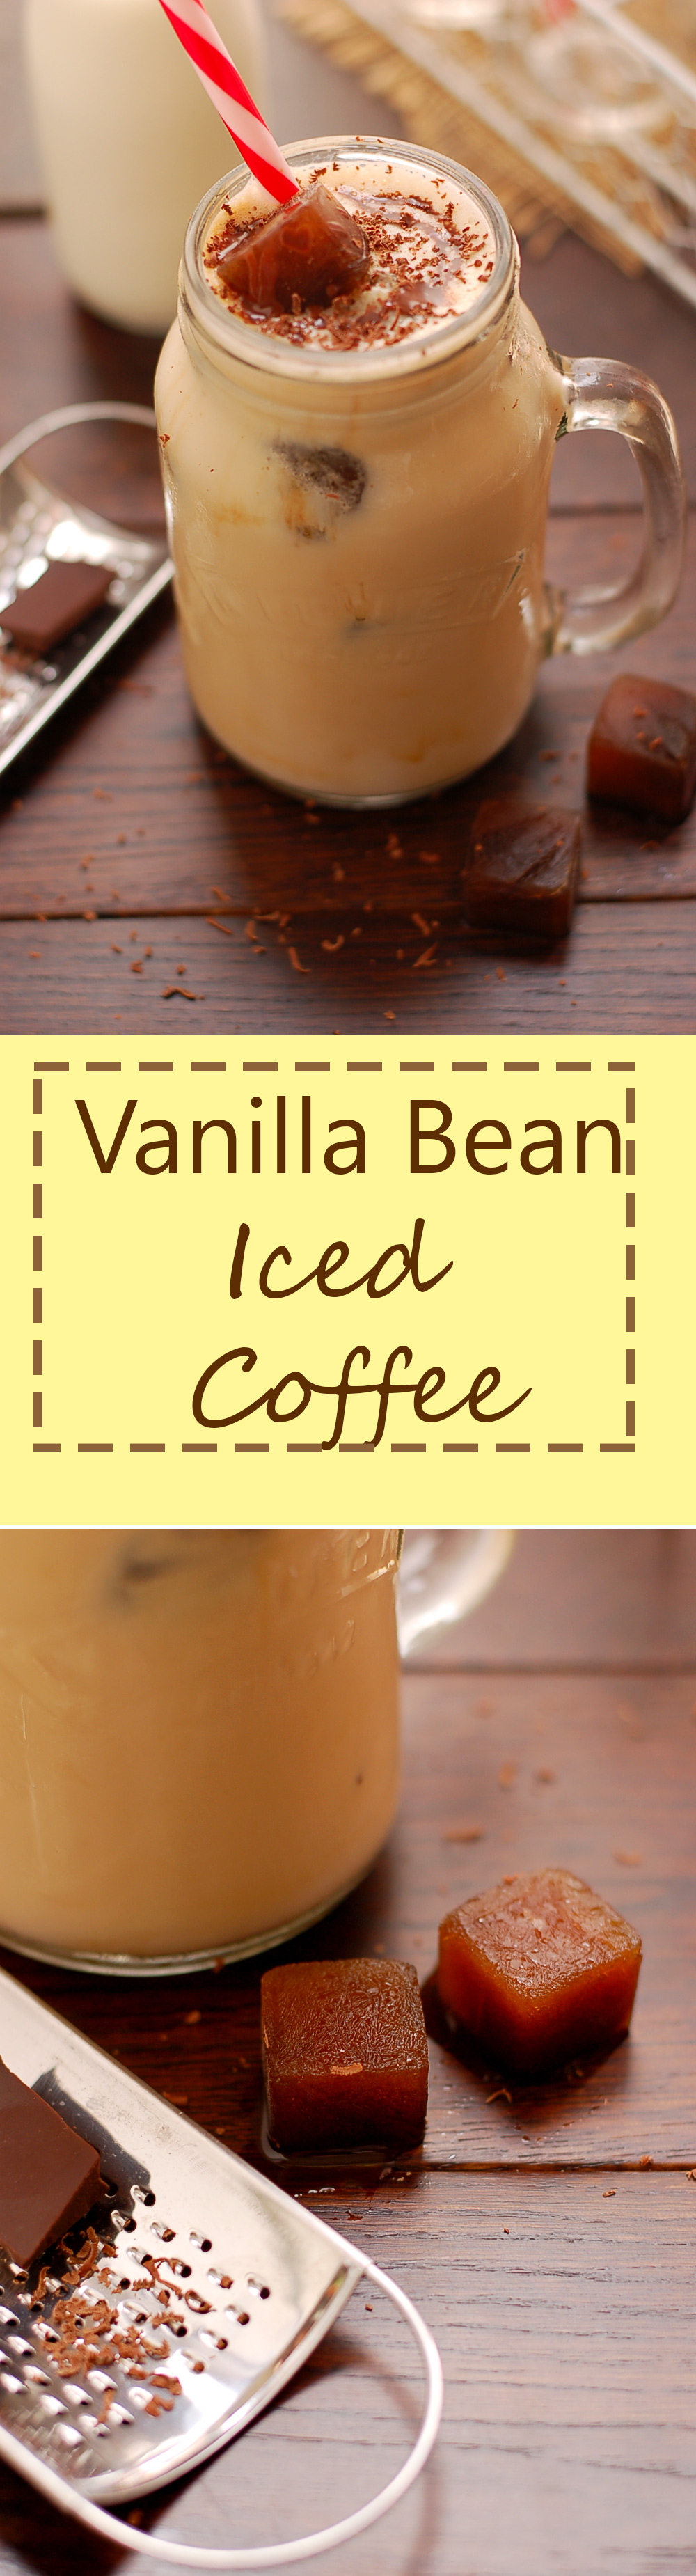 Yummy Vanilla Bean Iced Coffee. Zakochasz się w niej!